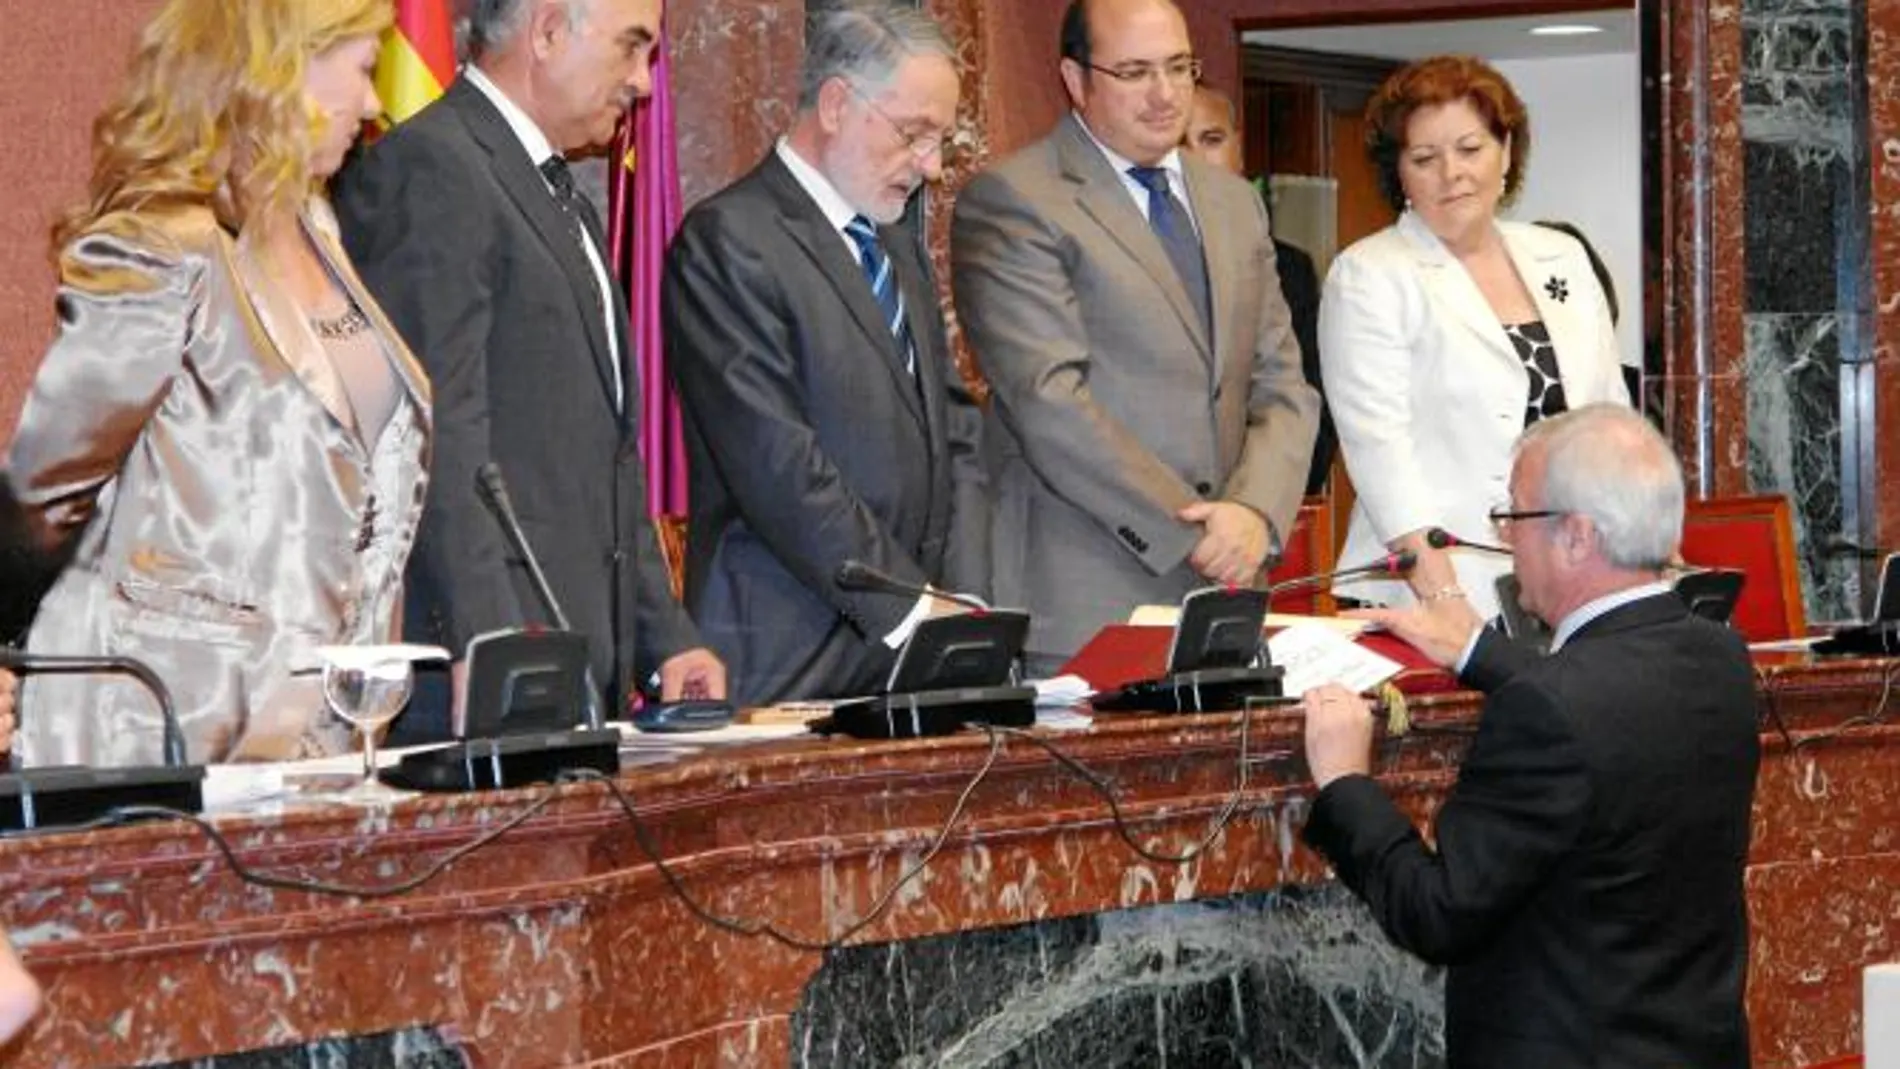 Fernández-Delgado, Garre, Celdrán, Sánchez y Rosique, que componen la nueva Mesa, escuchan atentos el juramento de Valcárcel